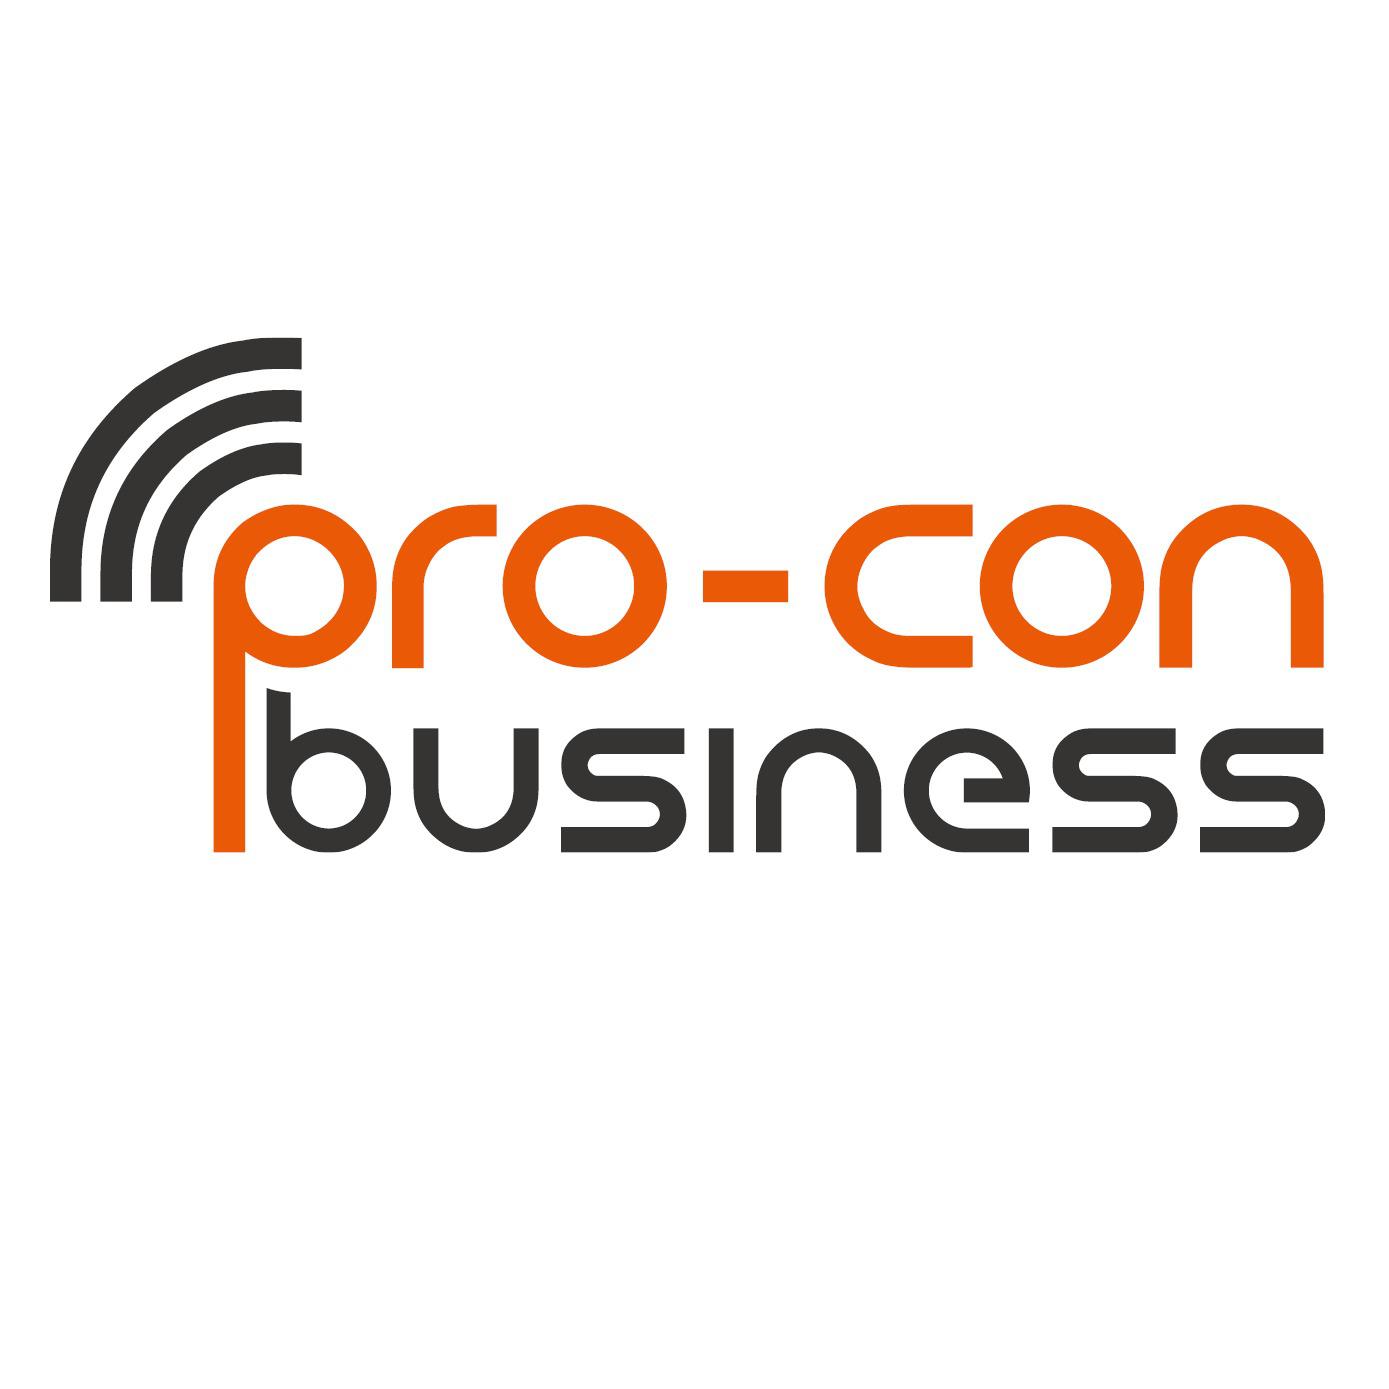 Logo pro-con business GmbH - Telekommunikations-Lösungen für Unternehmen und öffentliche Einrichtungen.